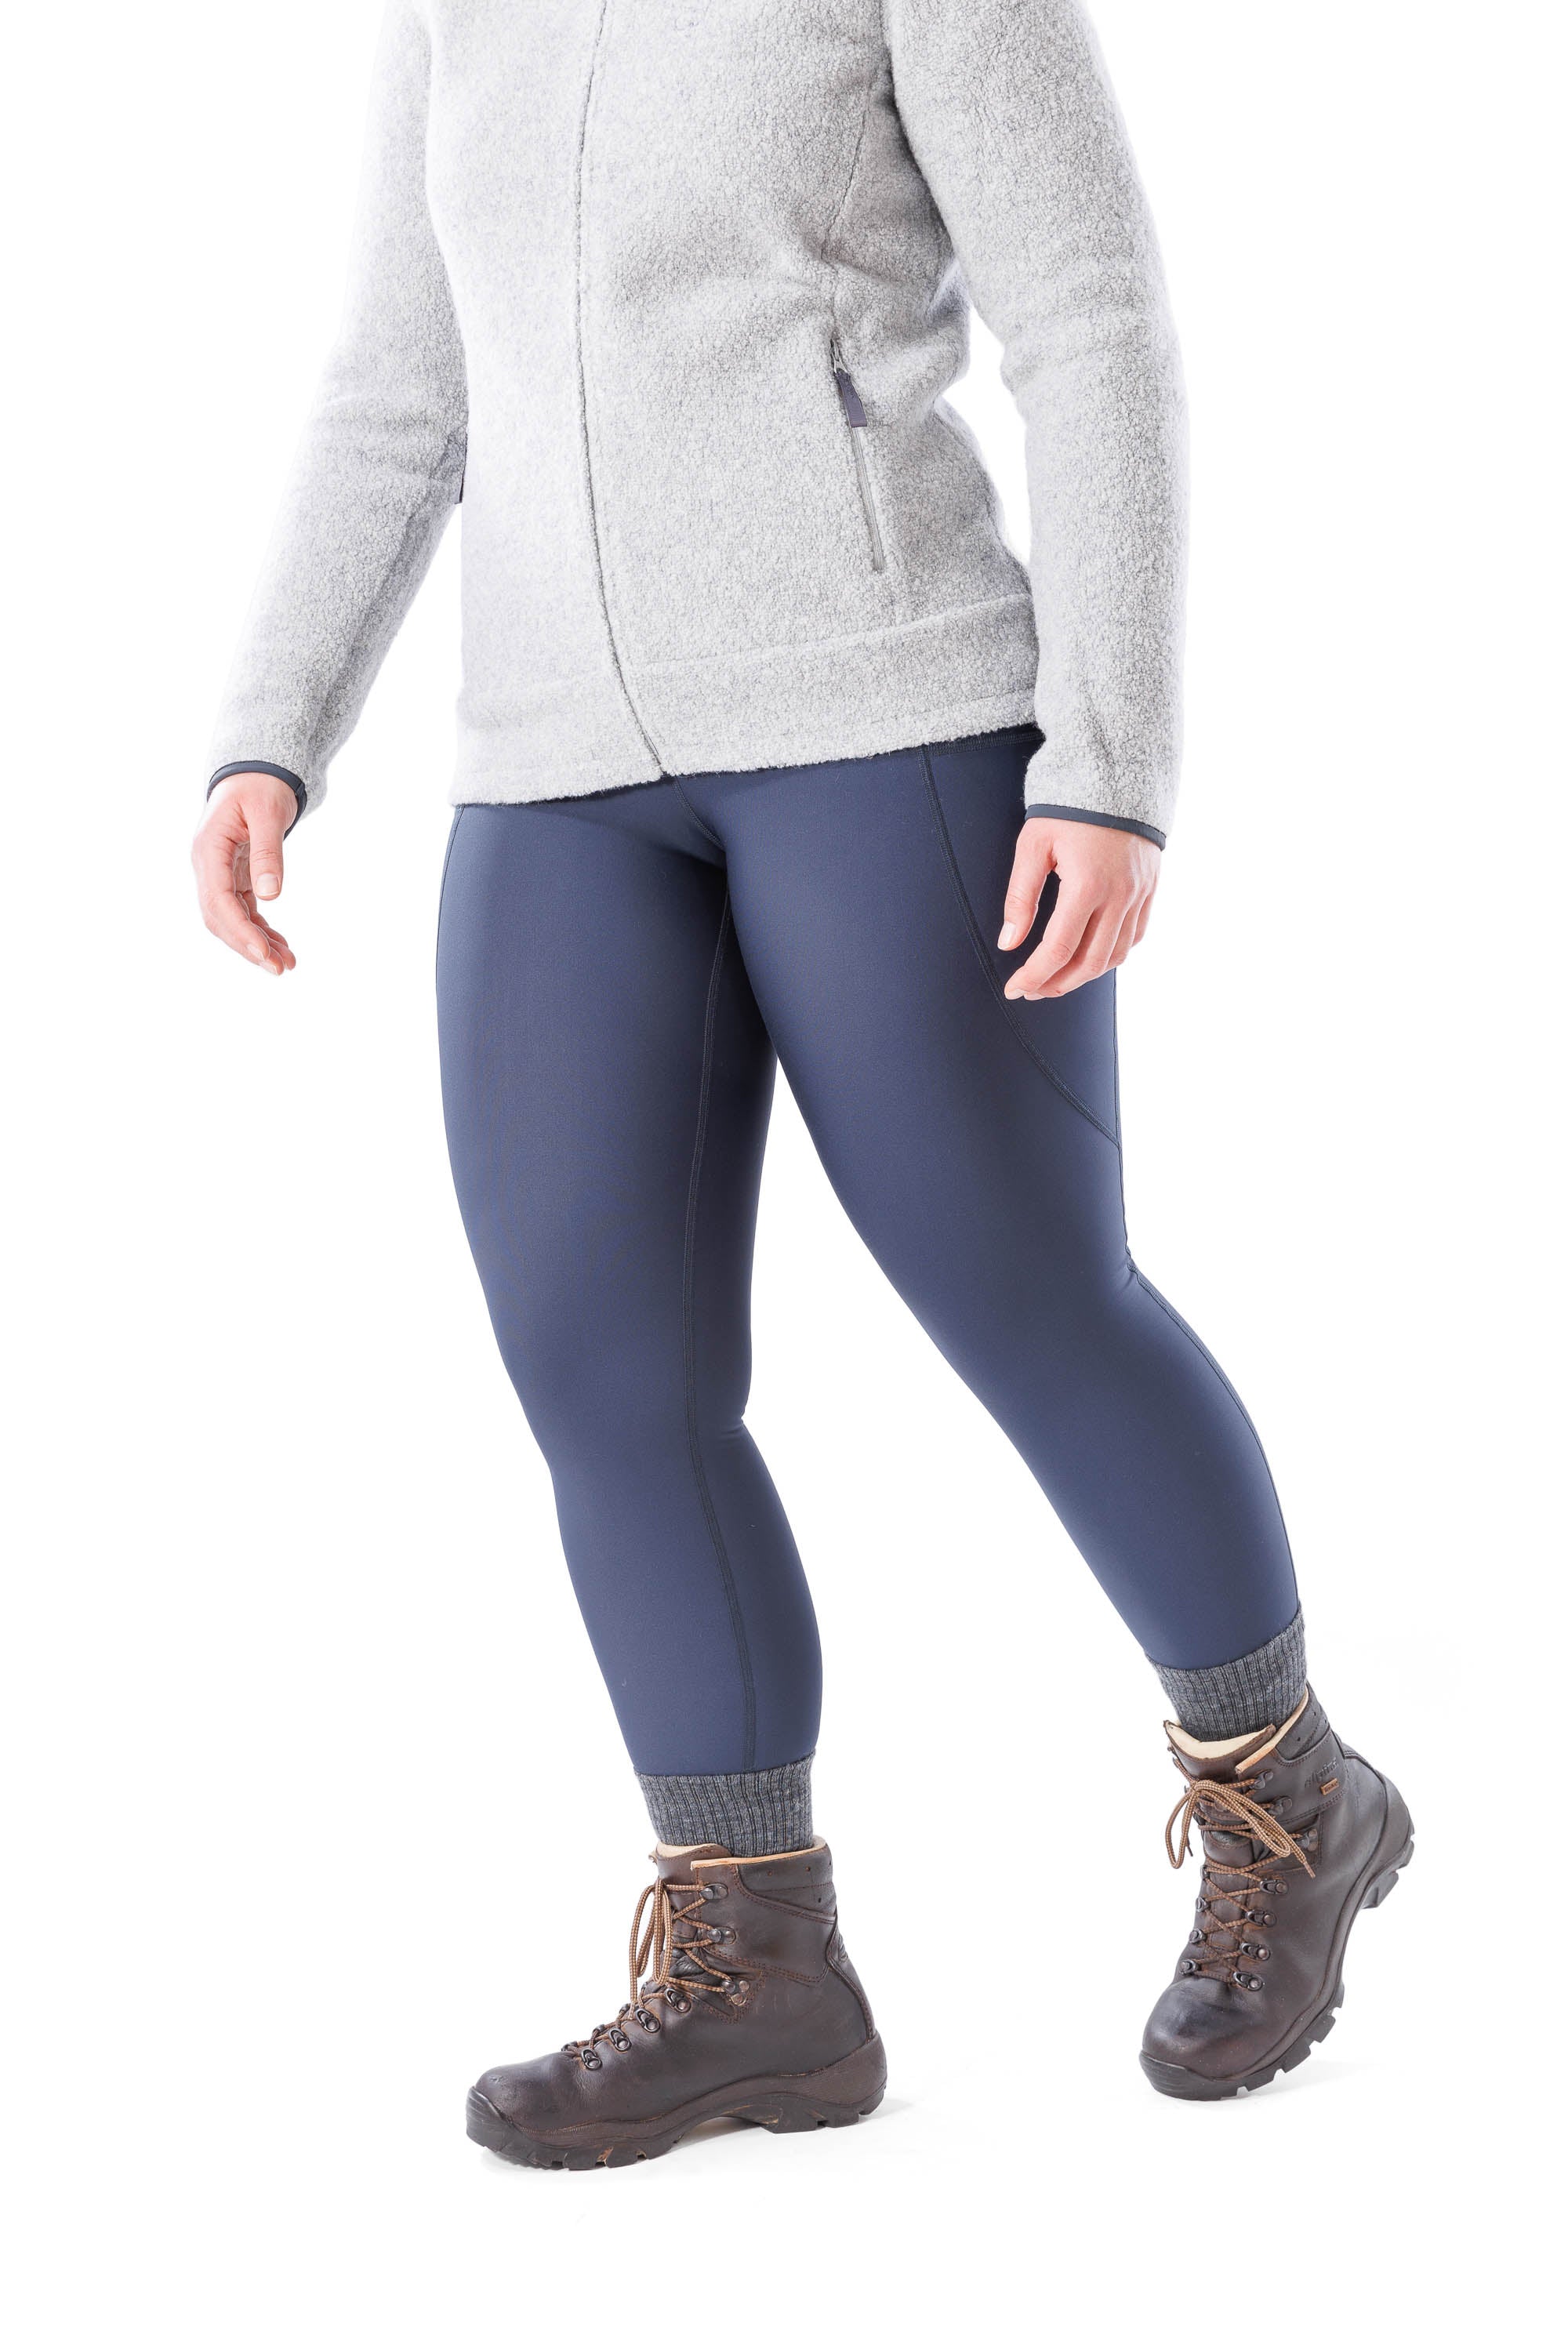 Therma Pro Women's Fleece Lined Winter Leggings - High Waist